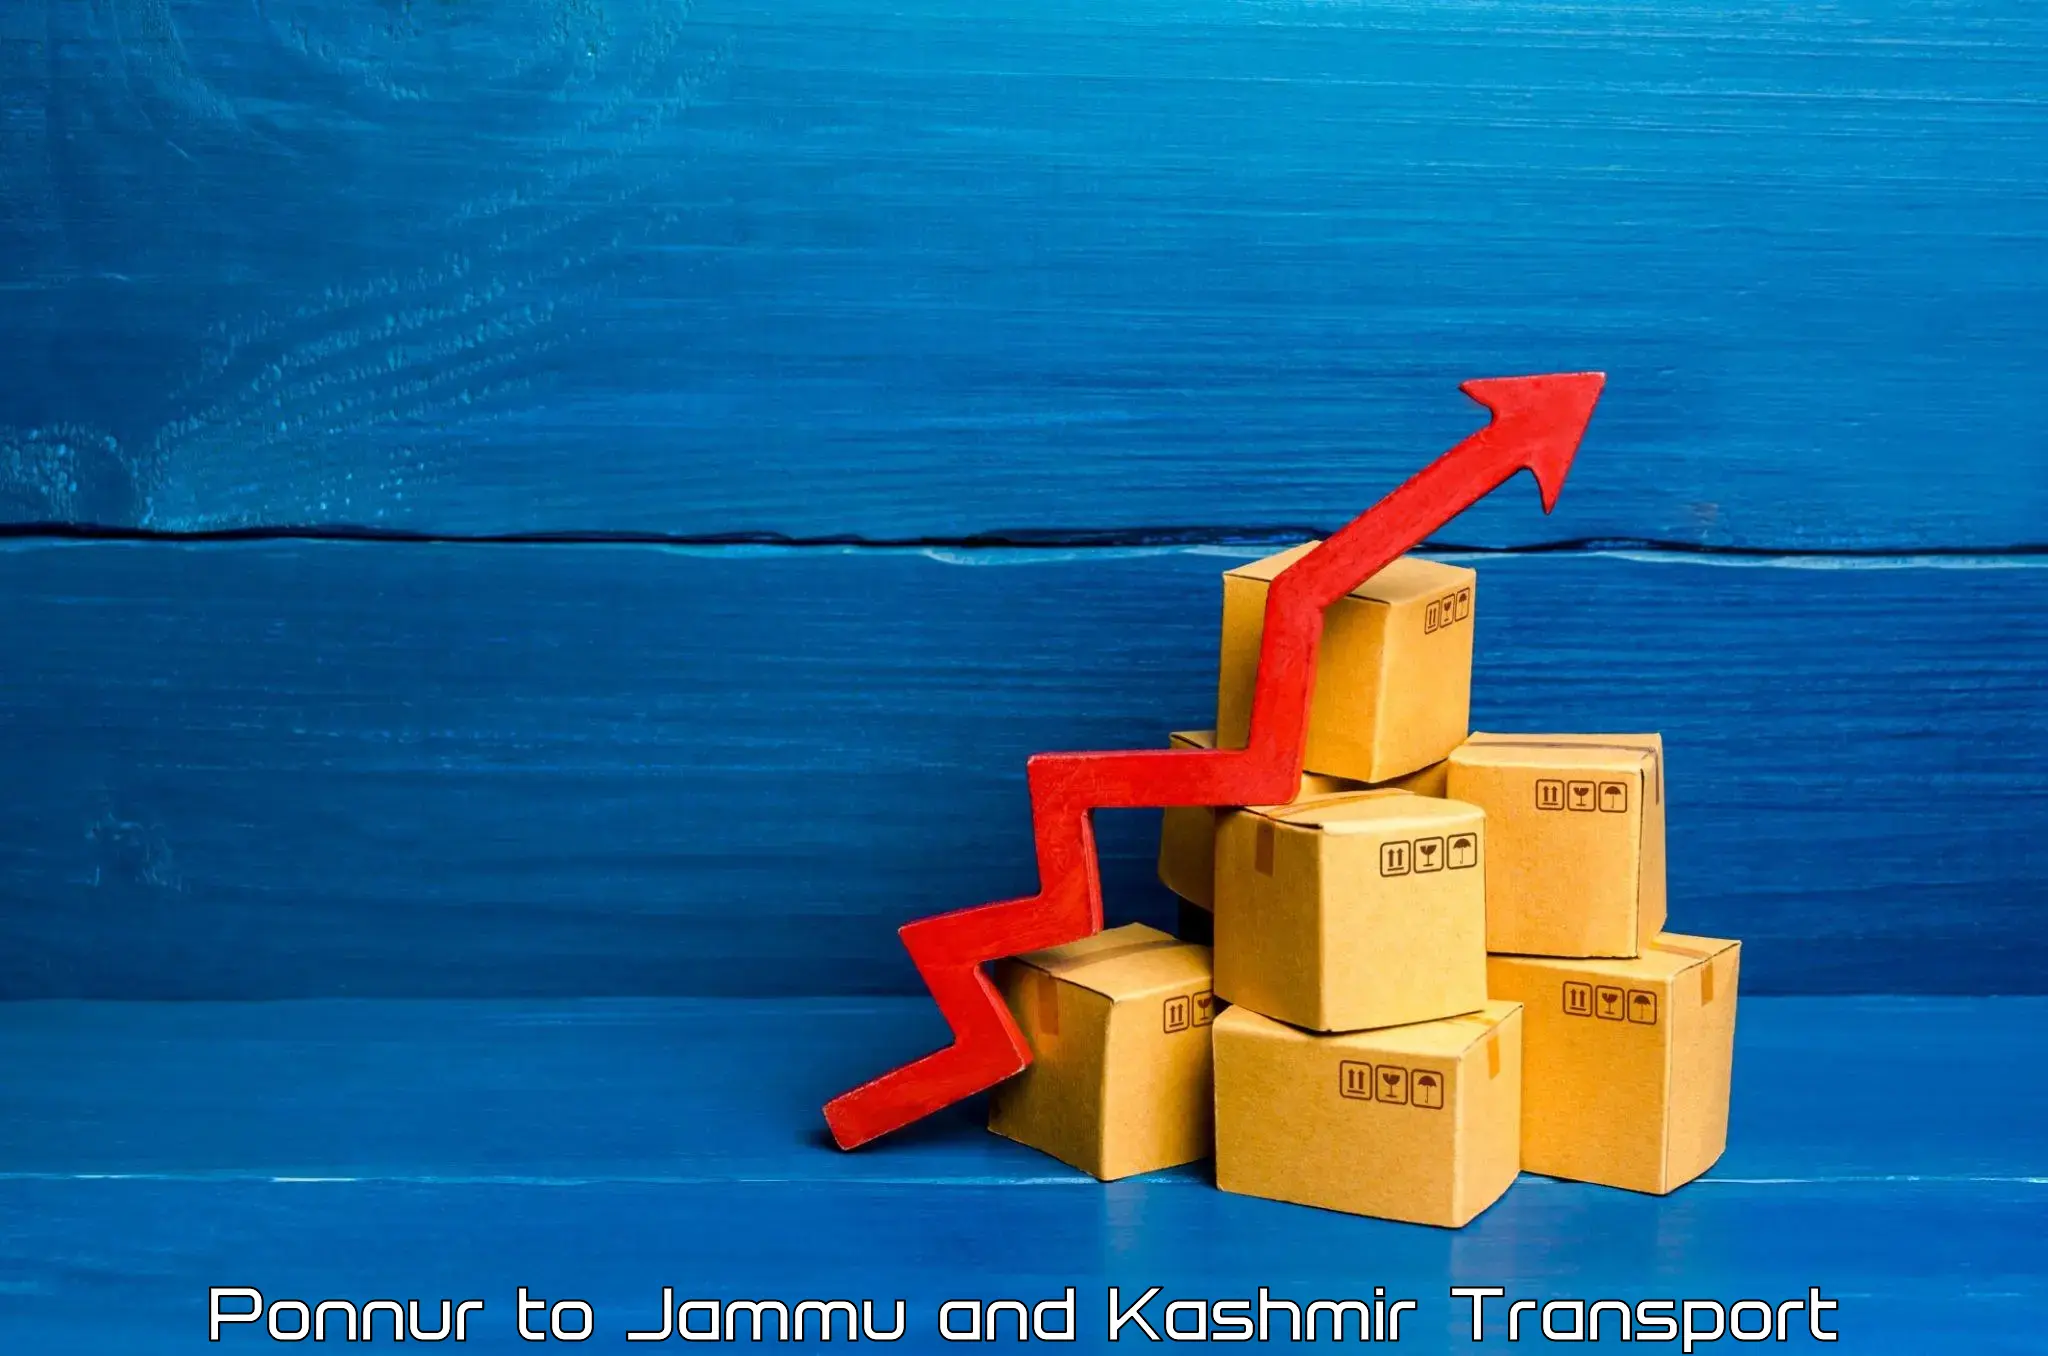 Air freight transport services in Ponnur to Srinagar Kashmir